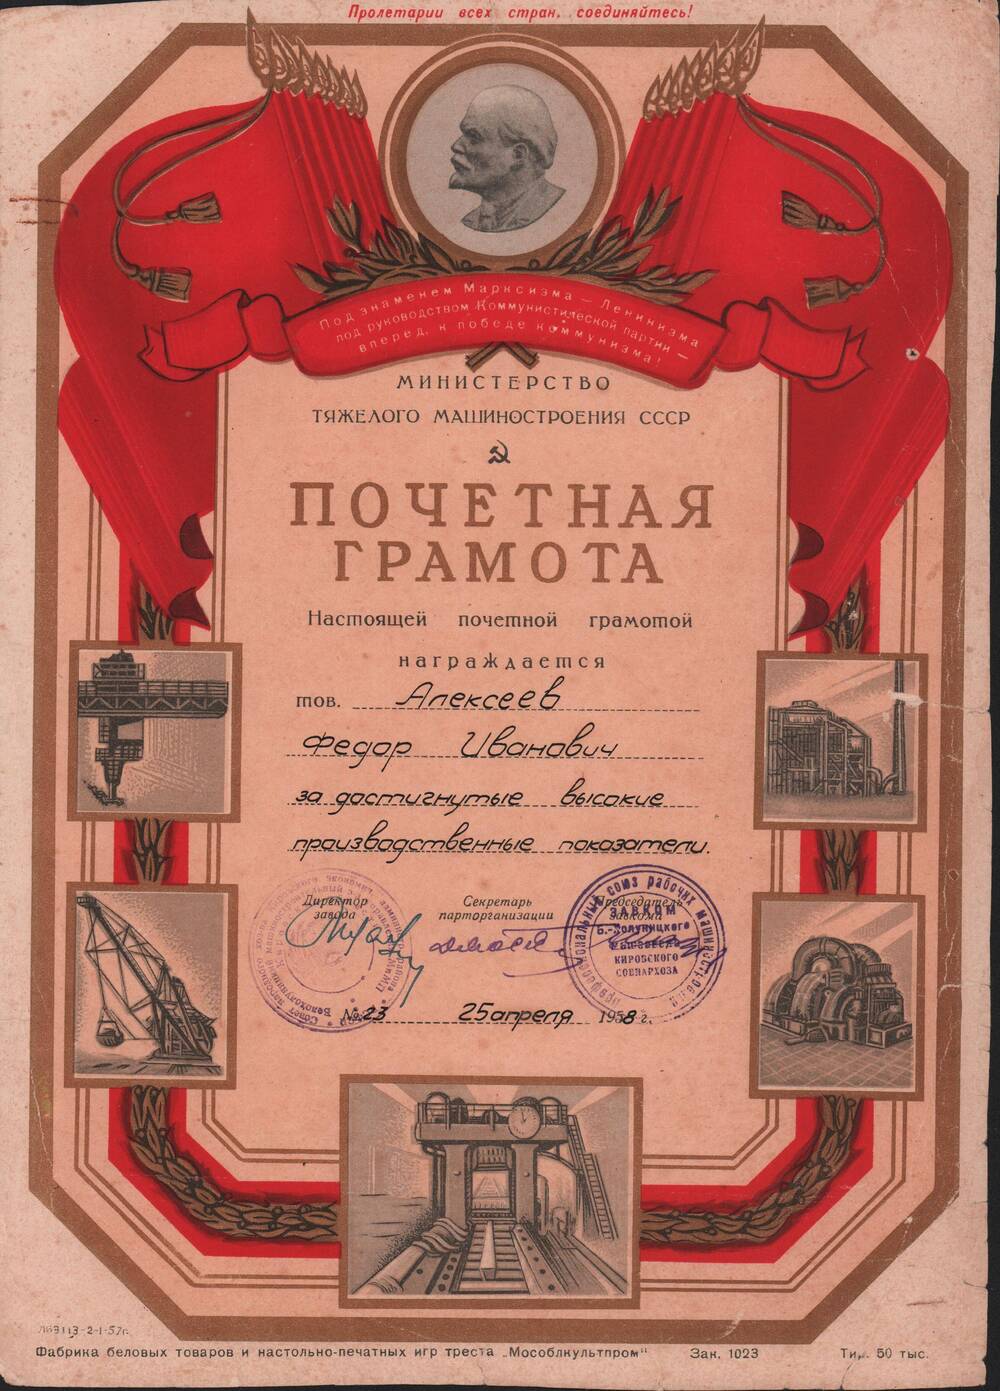 Почётная грамота Министерства Тяжёлого Машиностроения Алексеева Фёдора Ивановича за достигнутые высокие производственные показатели. № 23 от 25 апреля 1958г.